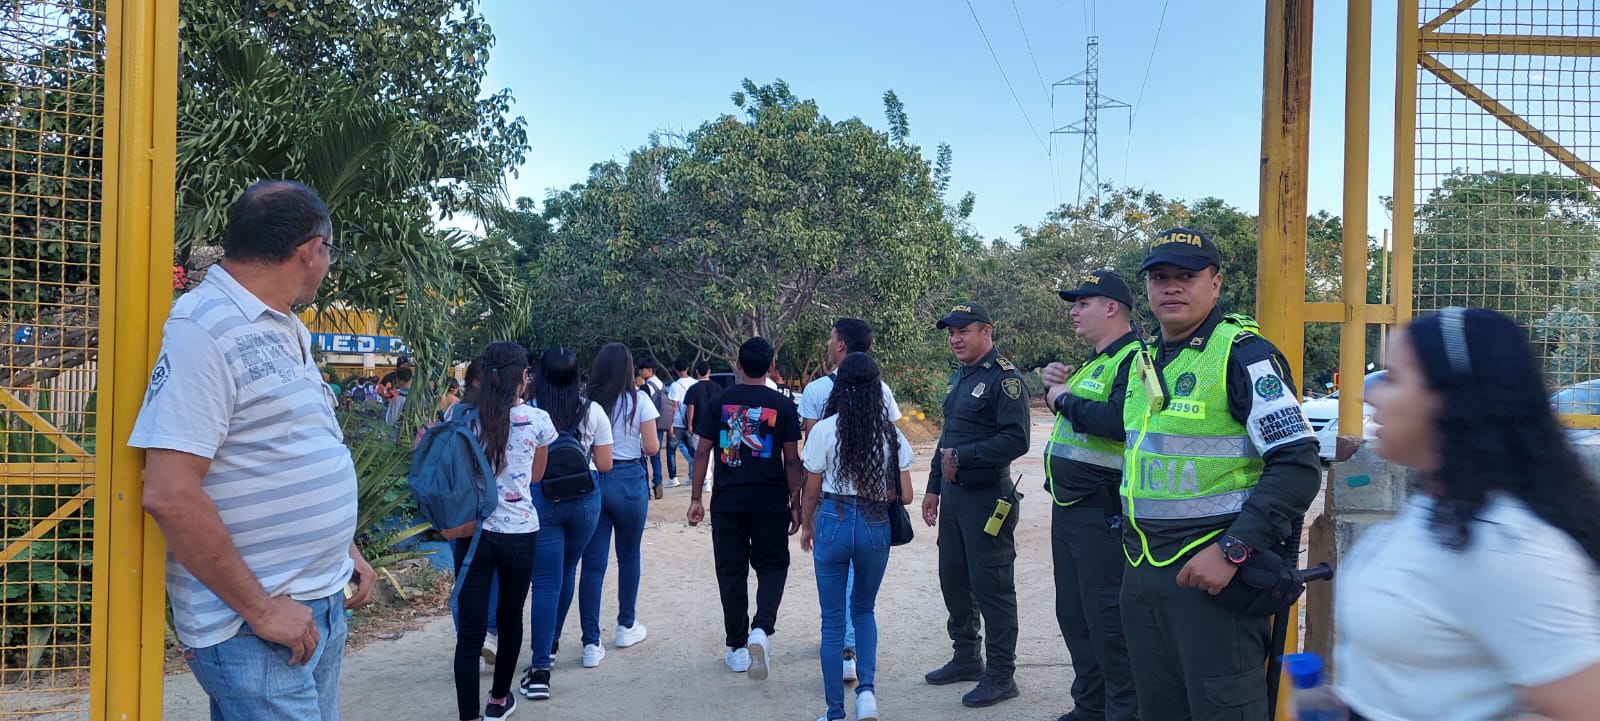 Policía acompaña el regreso a clases de los estudiantes del distrito de Santa Marta.